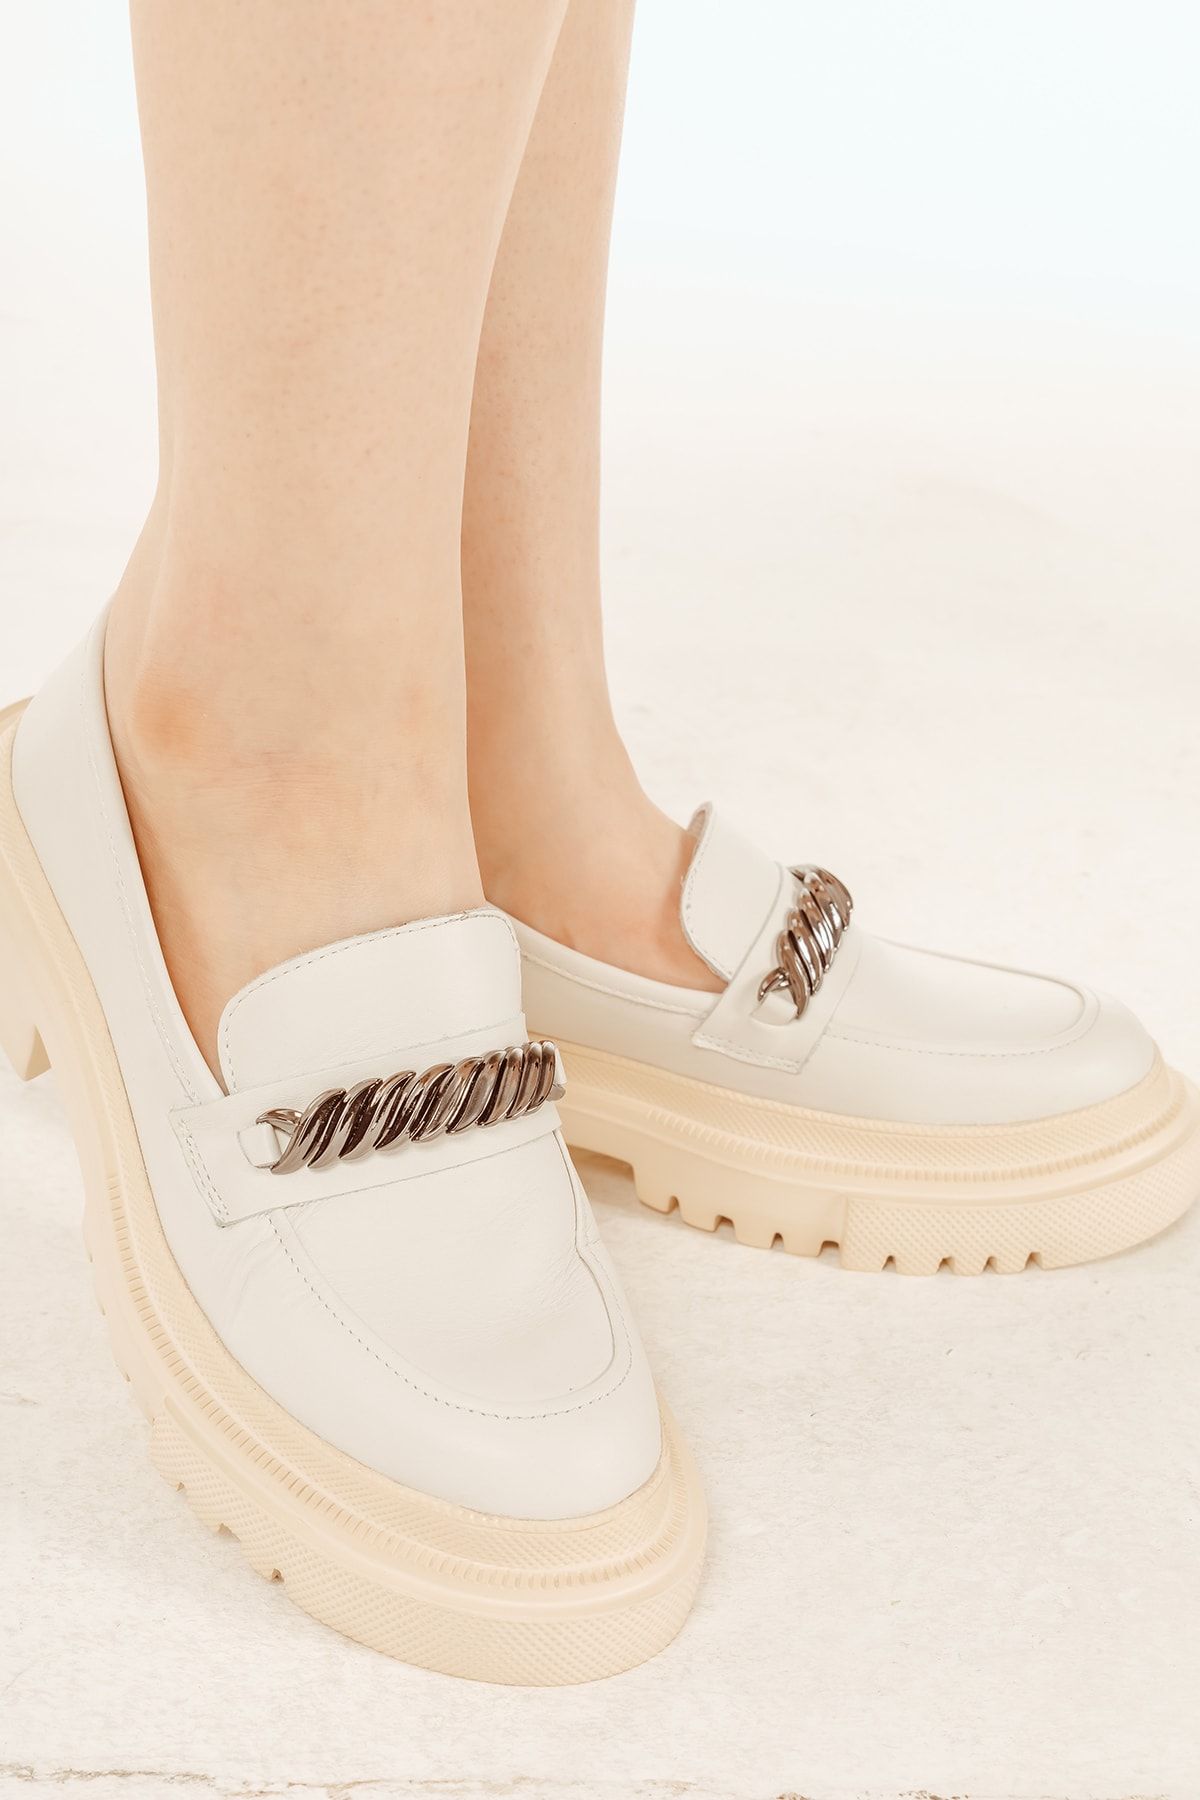 Cooliza Hakiki Deri Tokalı Günlük Kalın Taban Rahat Kadın Loafer Ayakkabı Kırık Beyaz